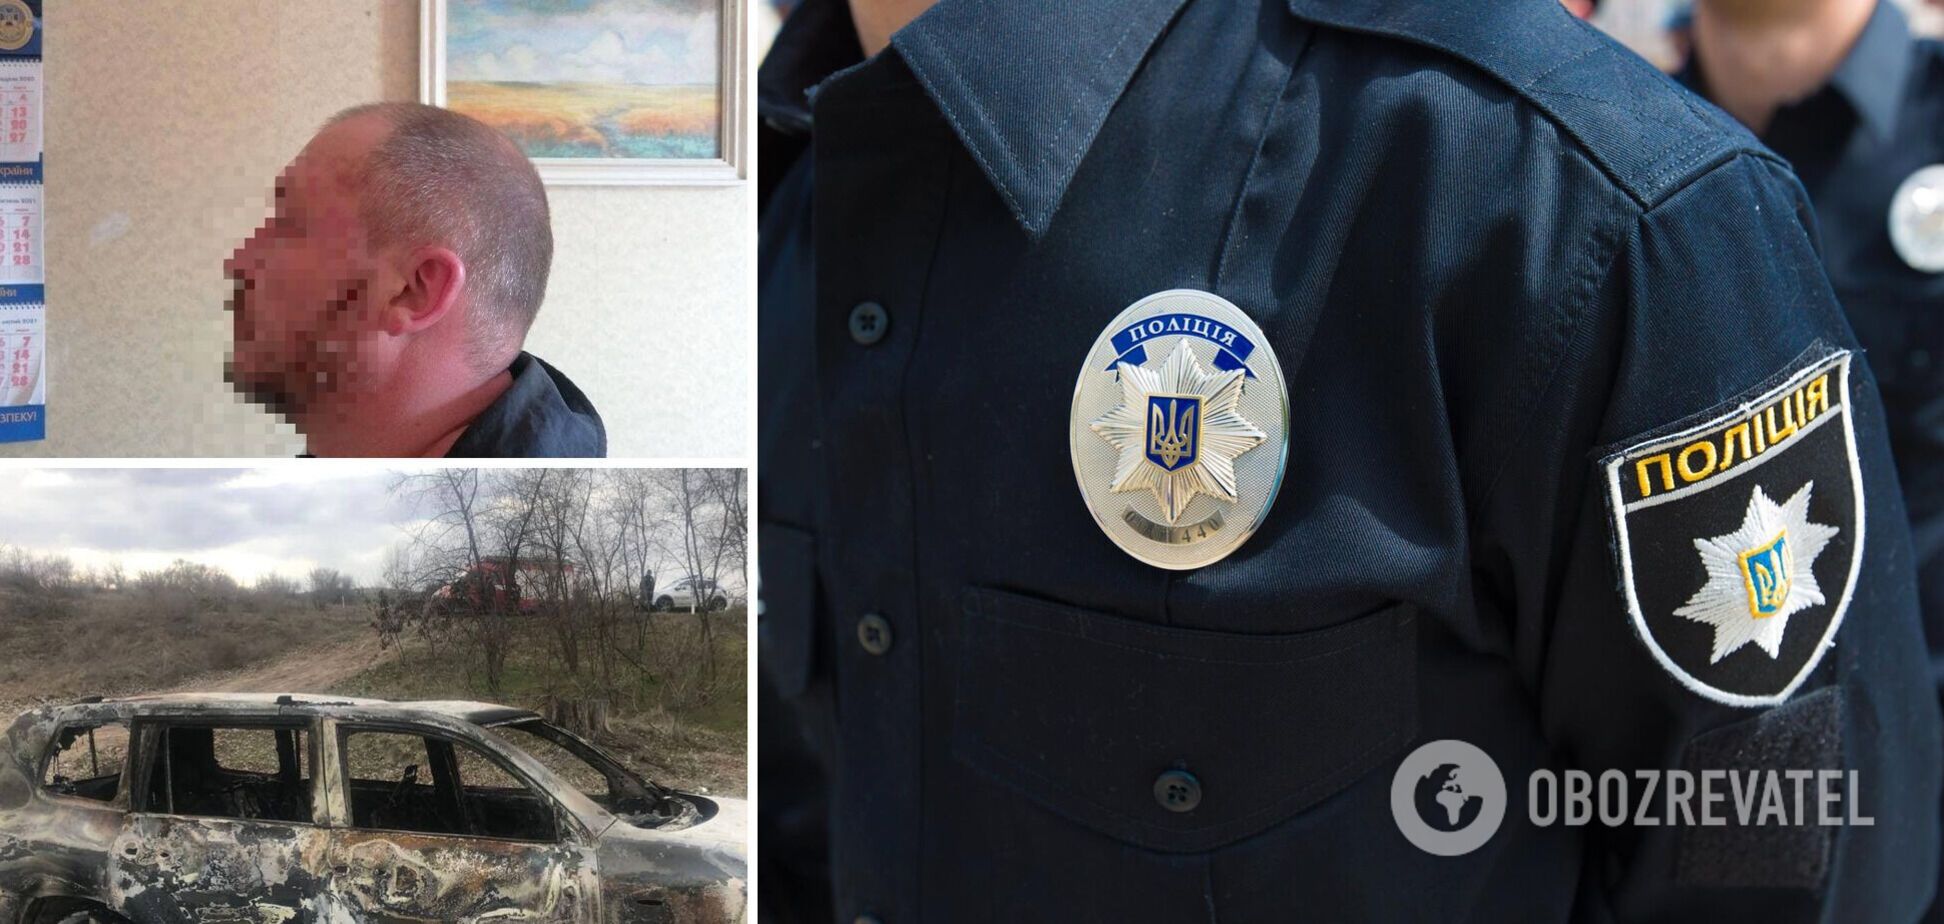 Пытки и убийство бизнесмена под Днепром: СМИ уточнили подробности и назвали имя подозреваемого. Фото